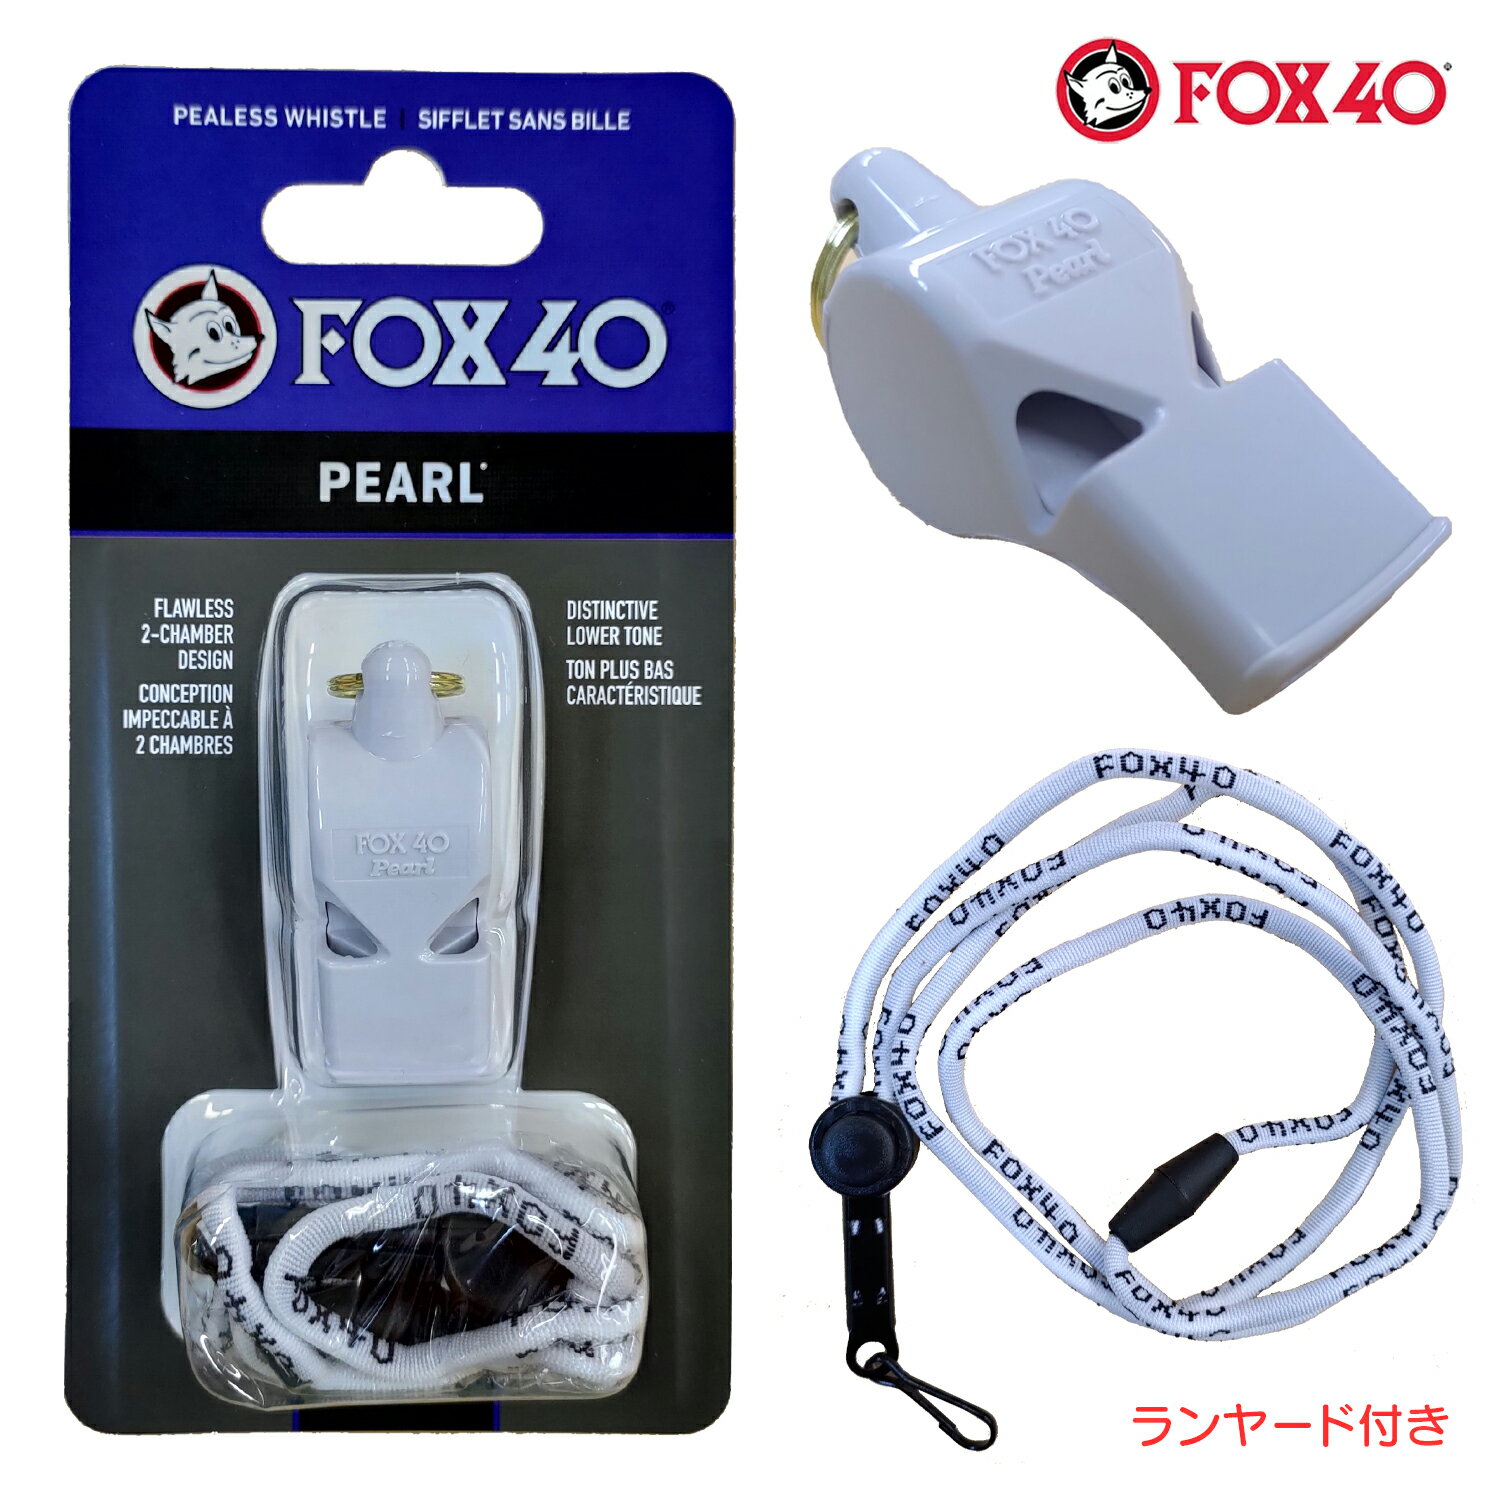 FOX40 フォックス40 Pearl ホイッスル 審判用 90db 色:ホワイト ランヤード付属 コルク玉不使用ピーレ..